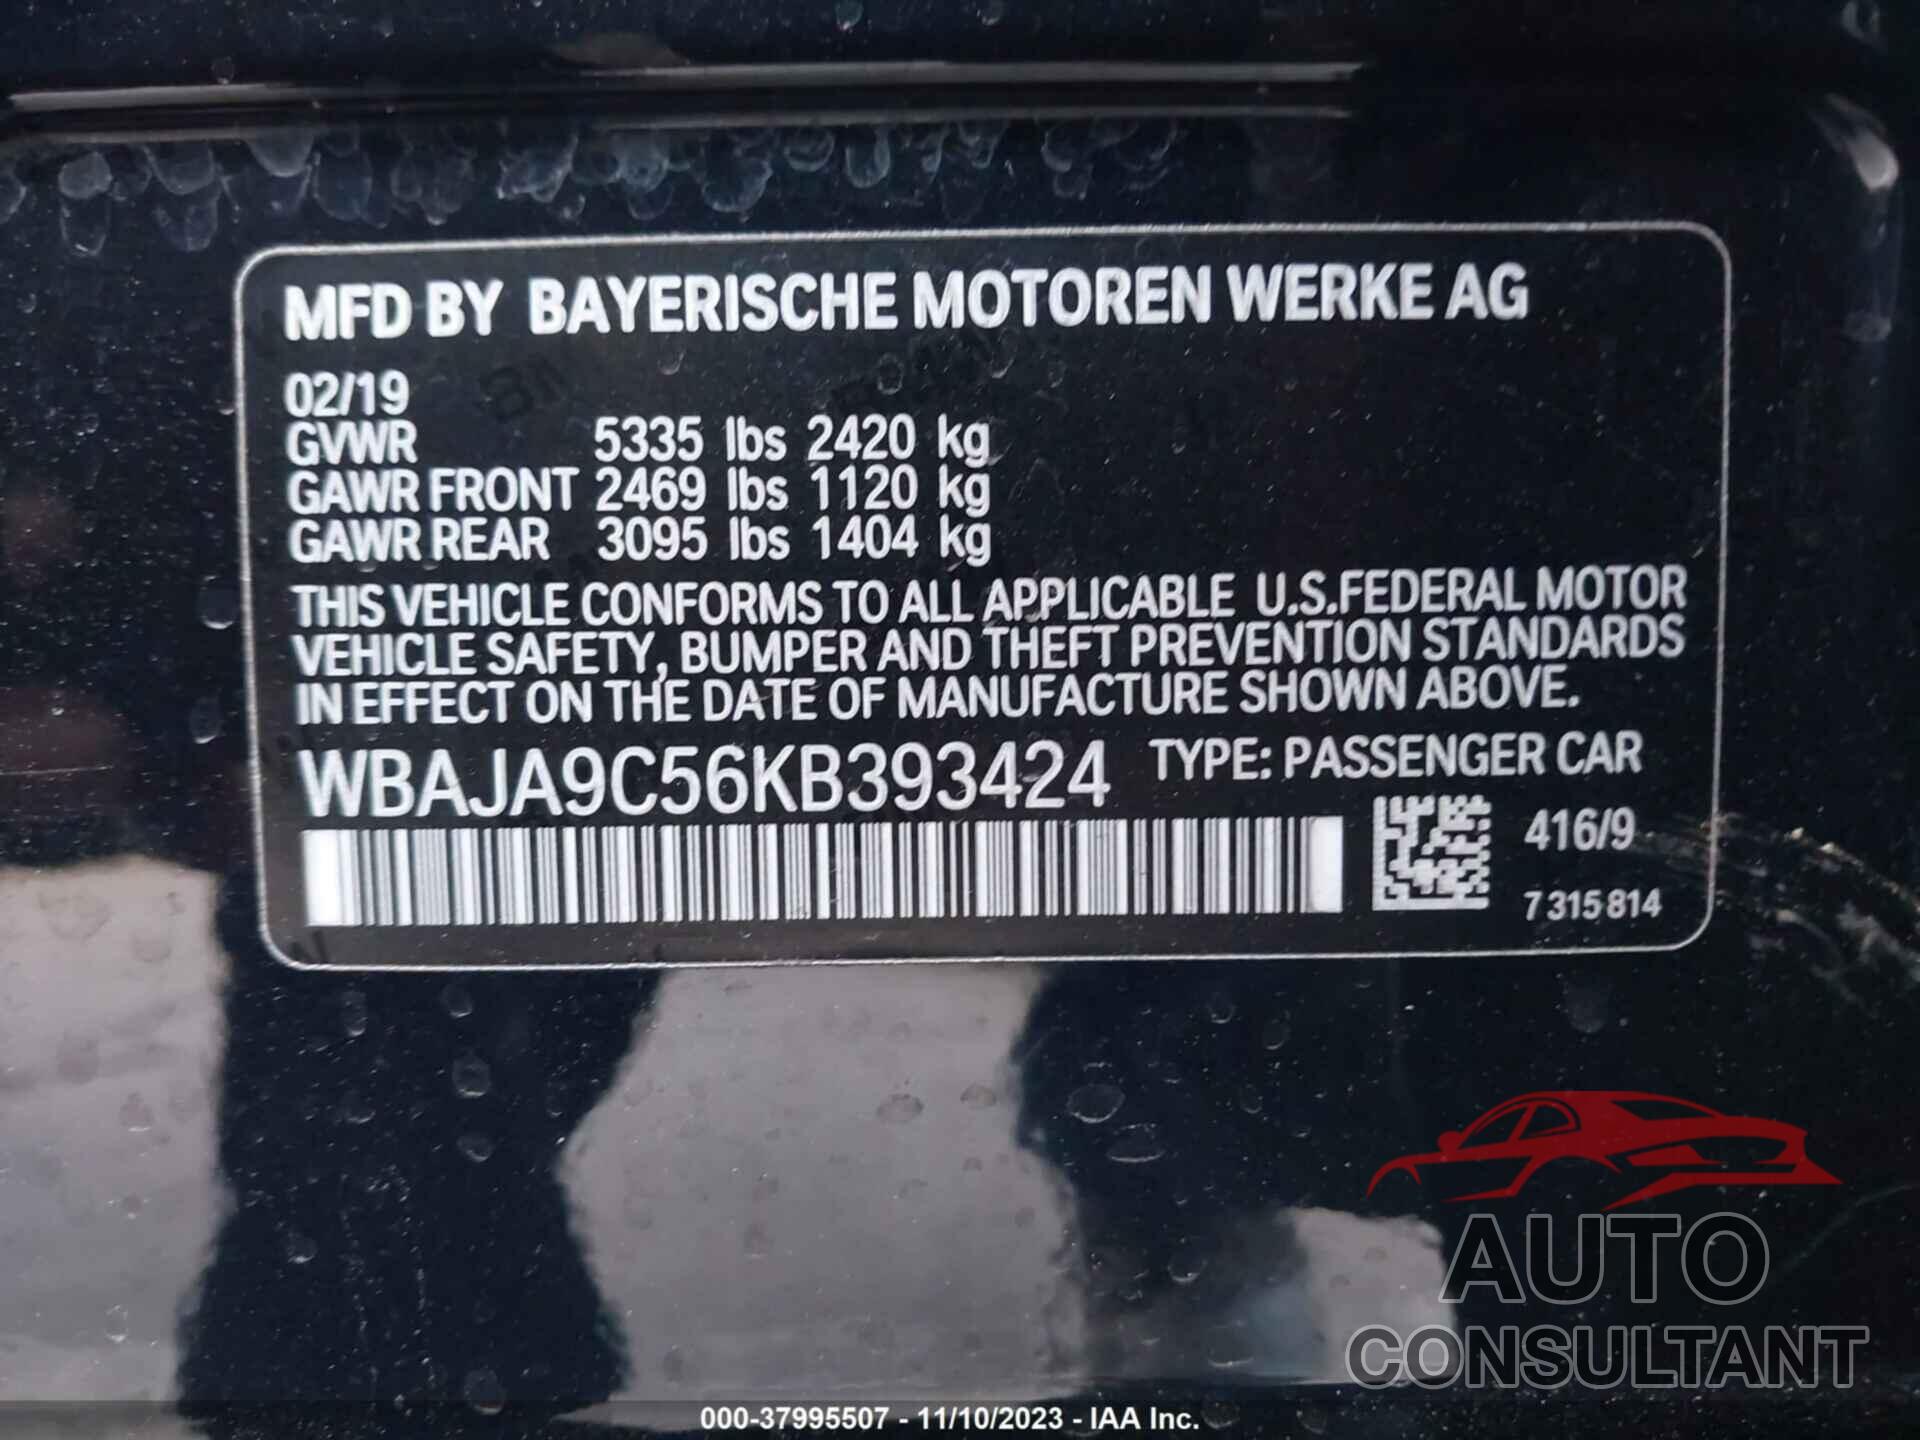 BMW 530E 2019 - WBAJA9C56KB393424